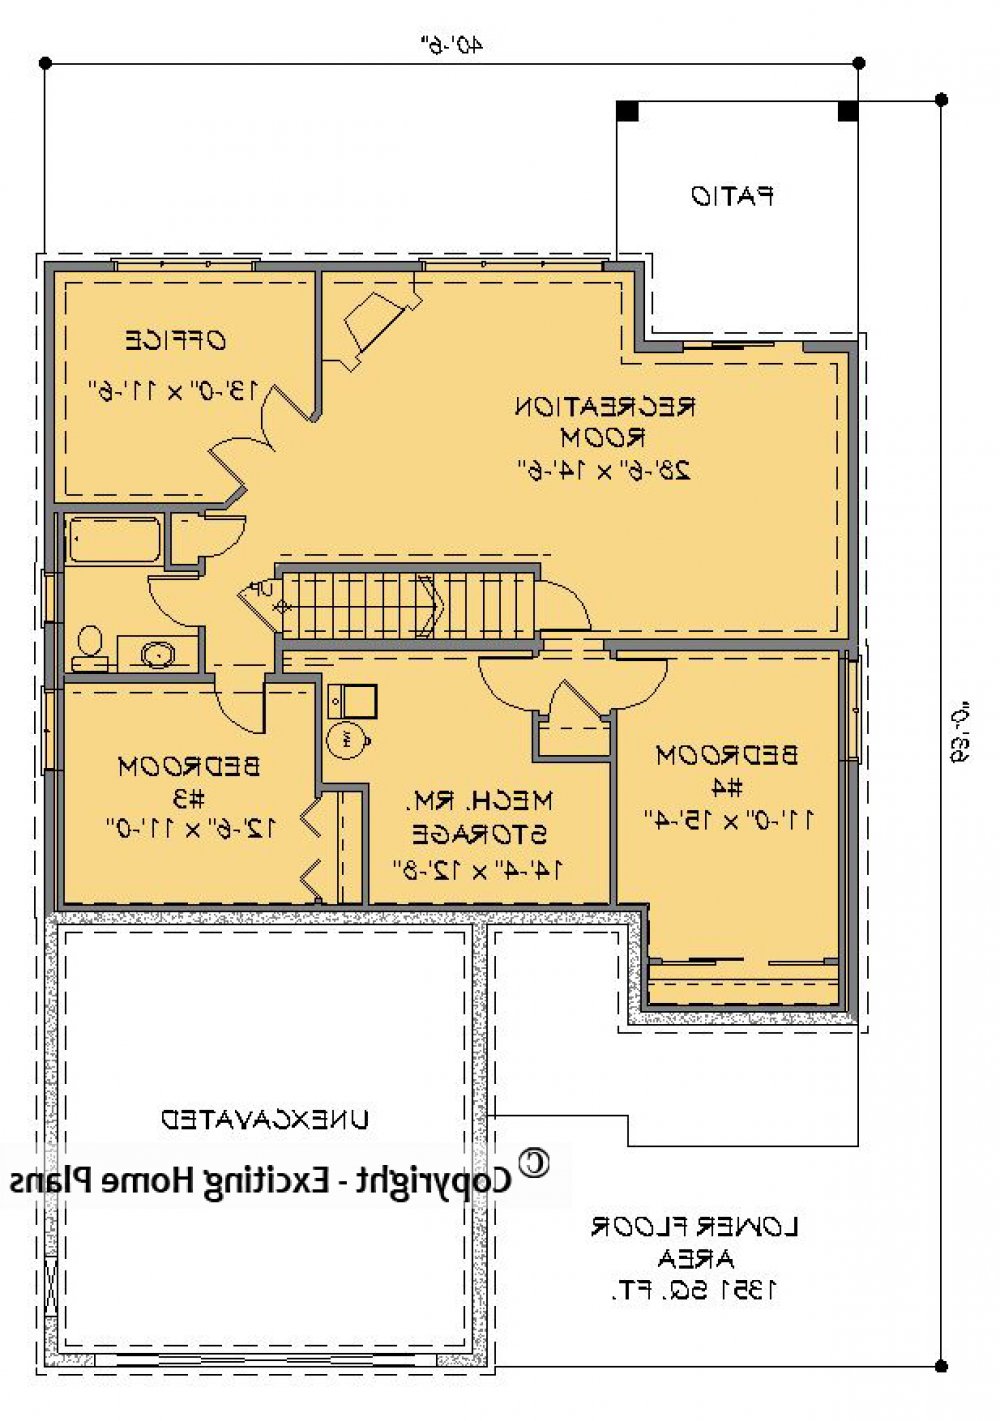 House Plan E1283-10 Lower Floor Plan REVERSE